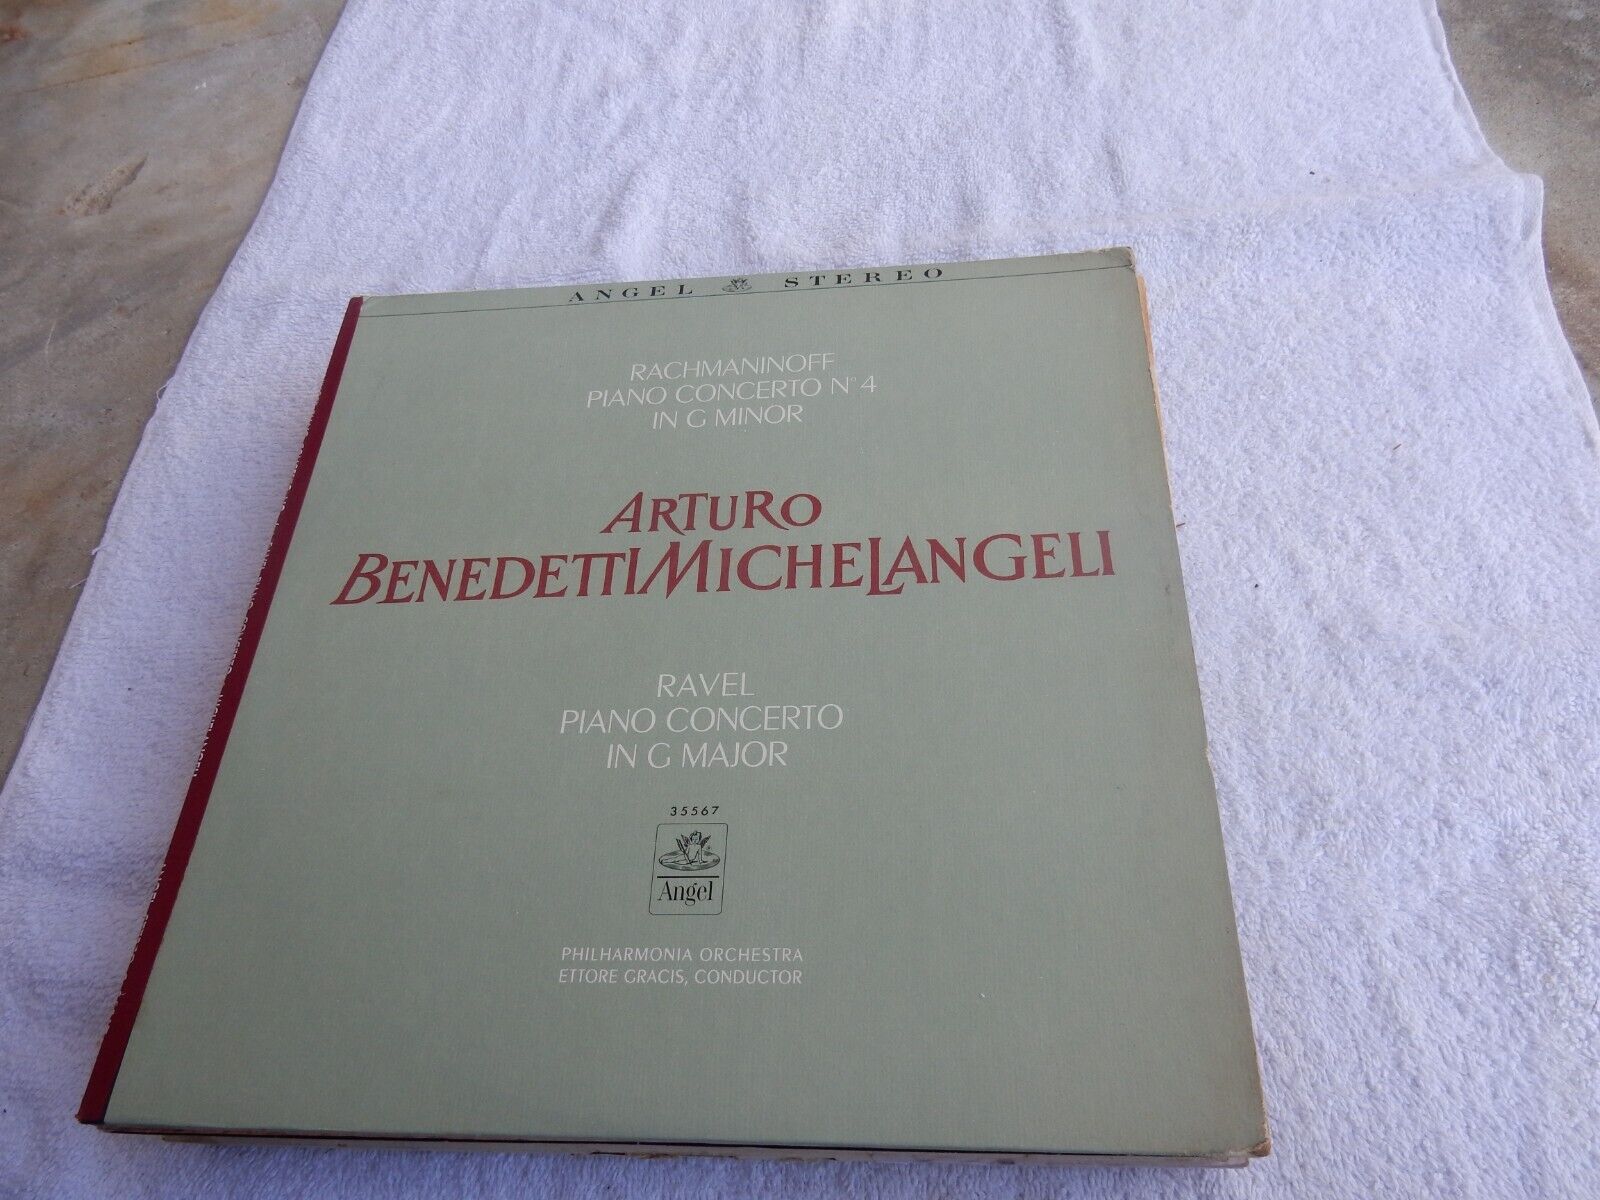 CLASSICAL ARTURO BENEDETTI  MICHELANGELI  33 1/3  12"  RECORD ALBUM